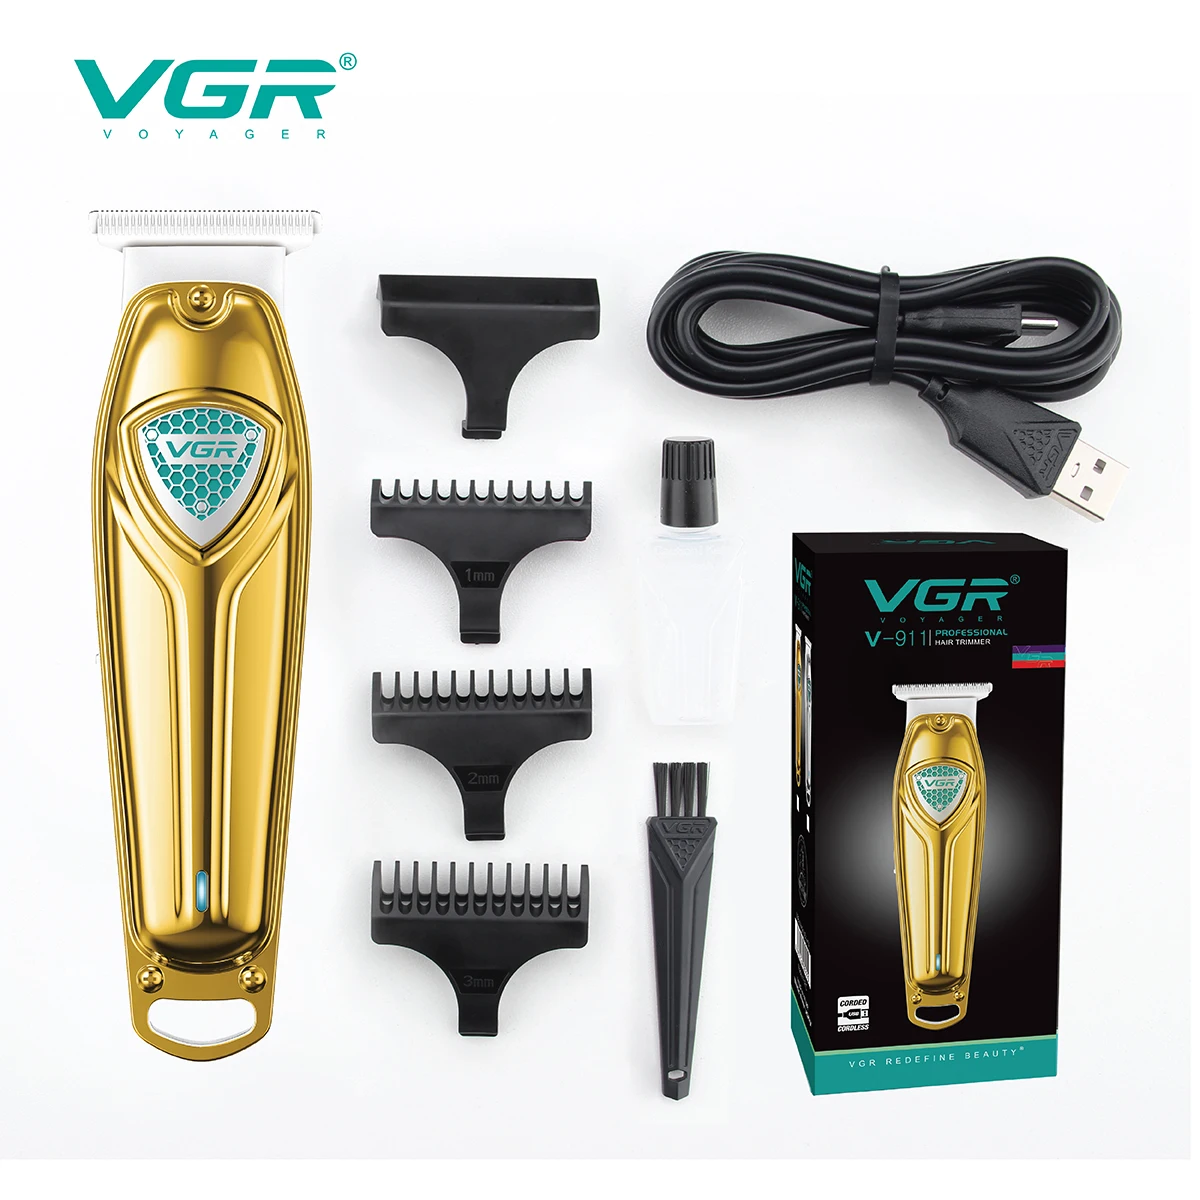 

VGR Hair Clipper Rechargeable Hair Cutting Machine Professional Hair Trimmer Cordless Haircut Bald Head 0mm Cutting Blade V-911